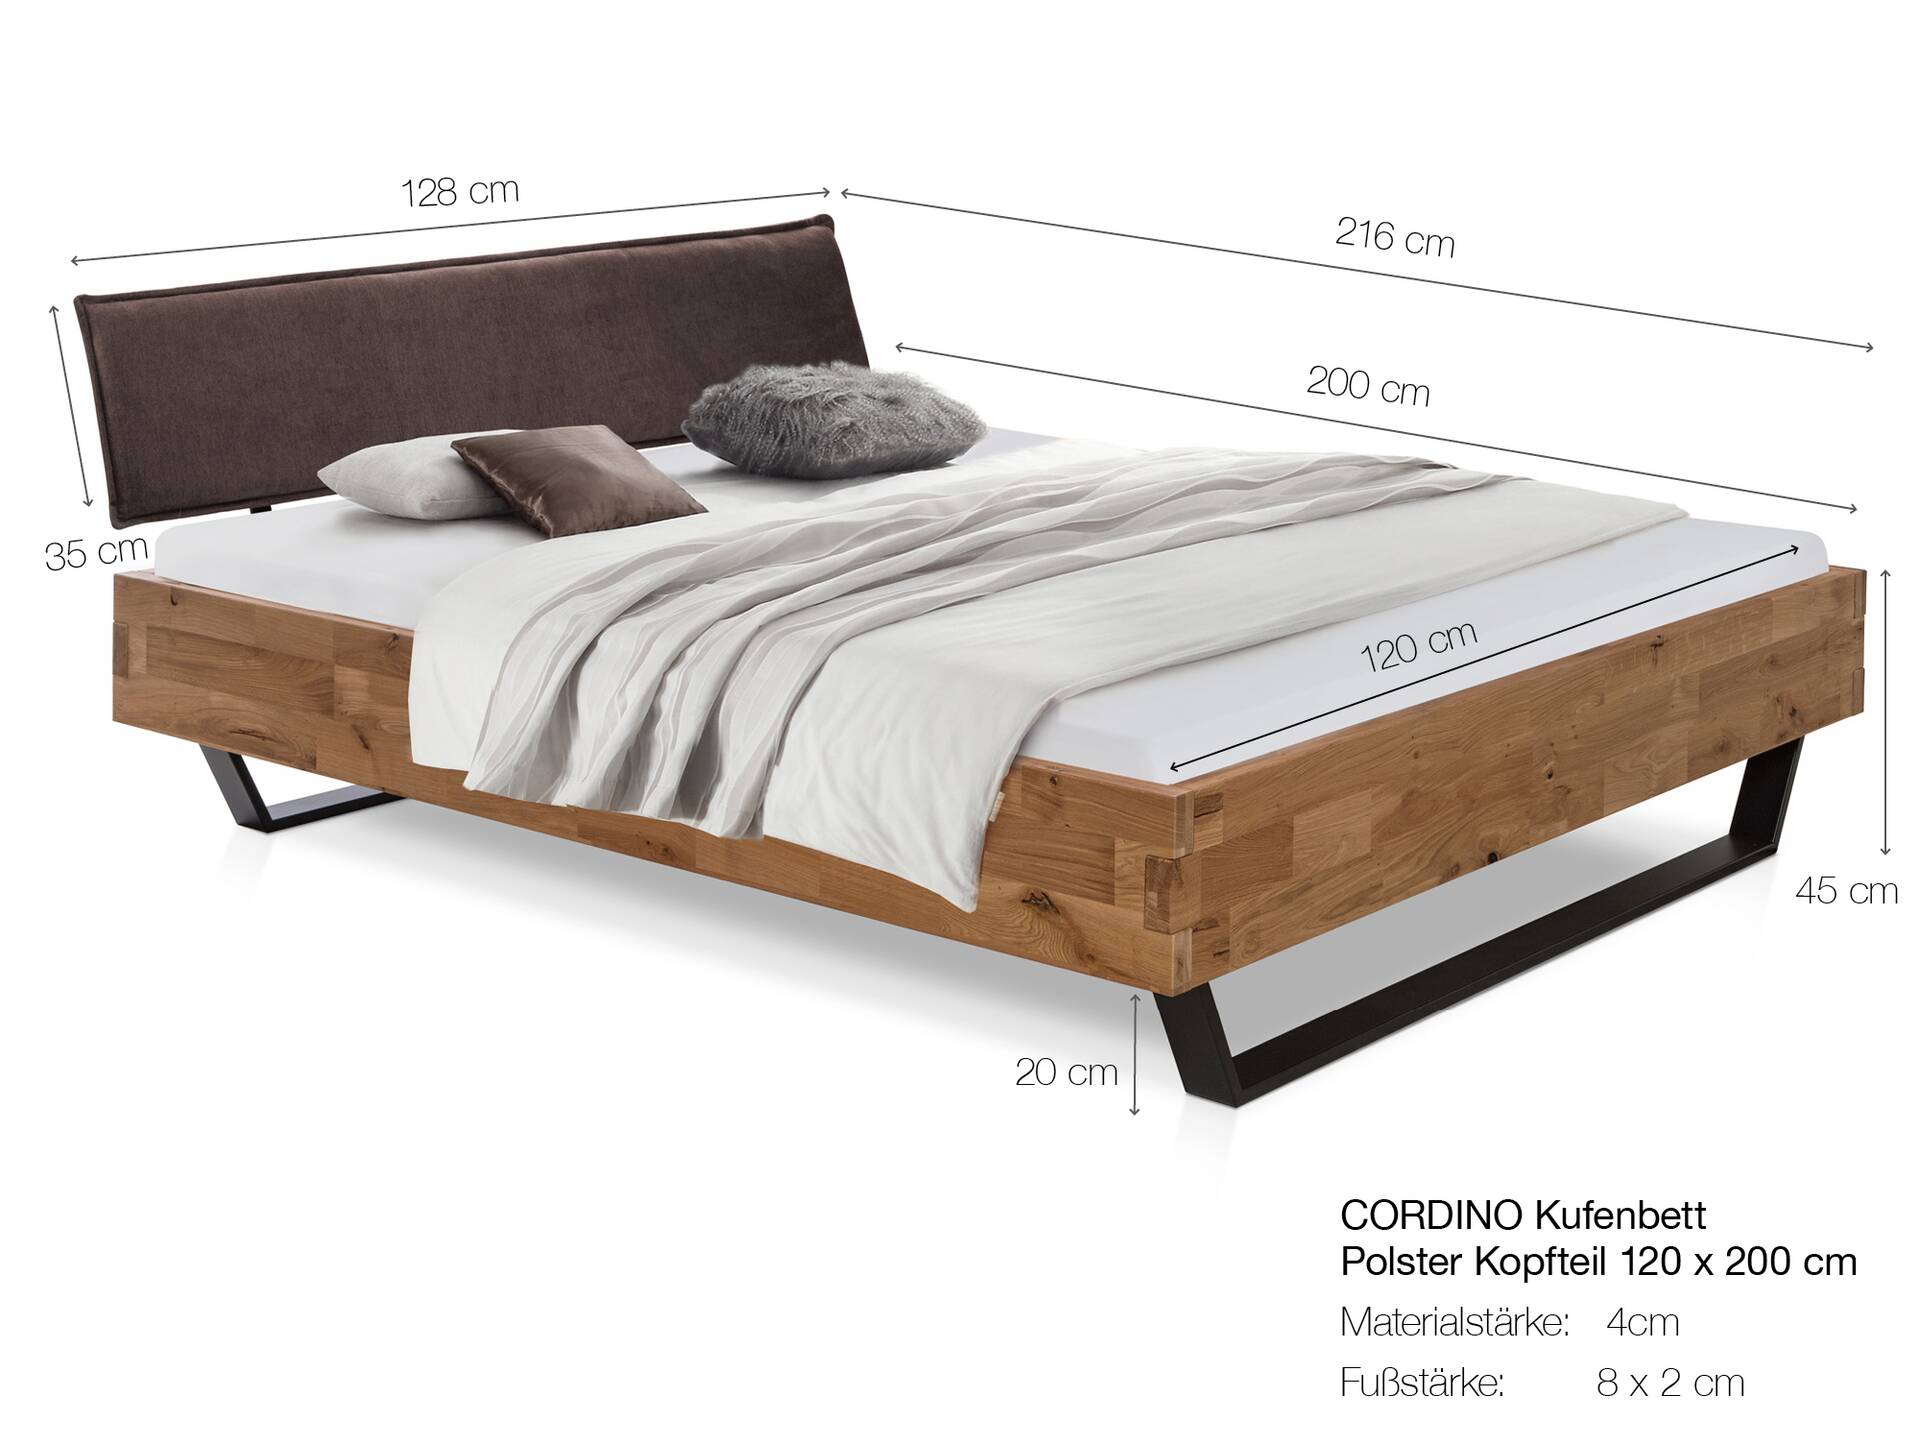 CORDINO Kufenbett aus Eiche mit Polsterkopfteil, Material Massivholz 120 x 200 cm | Eiche lackiert | Stoff Anthrazit | gebürstet